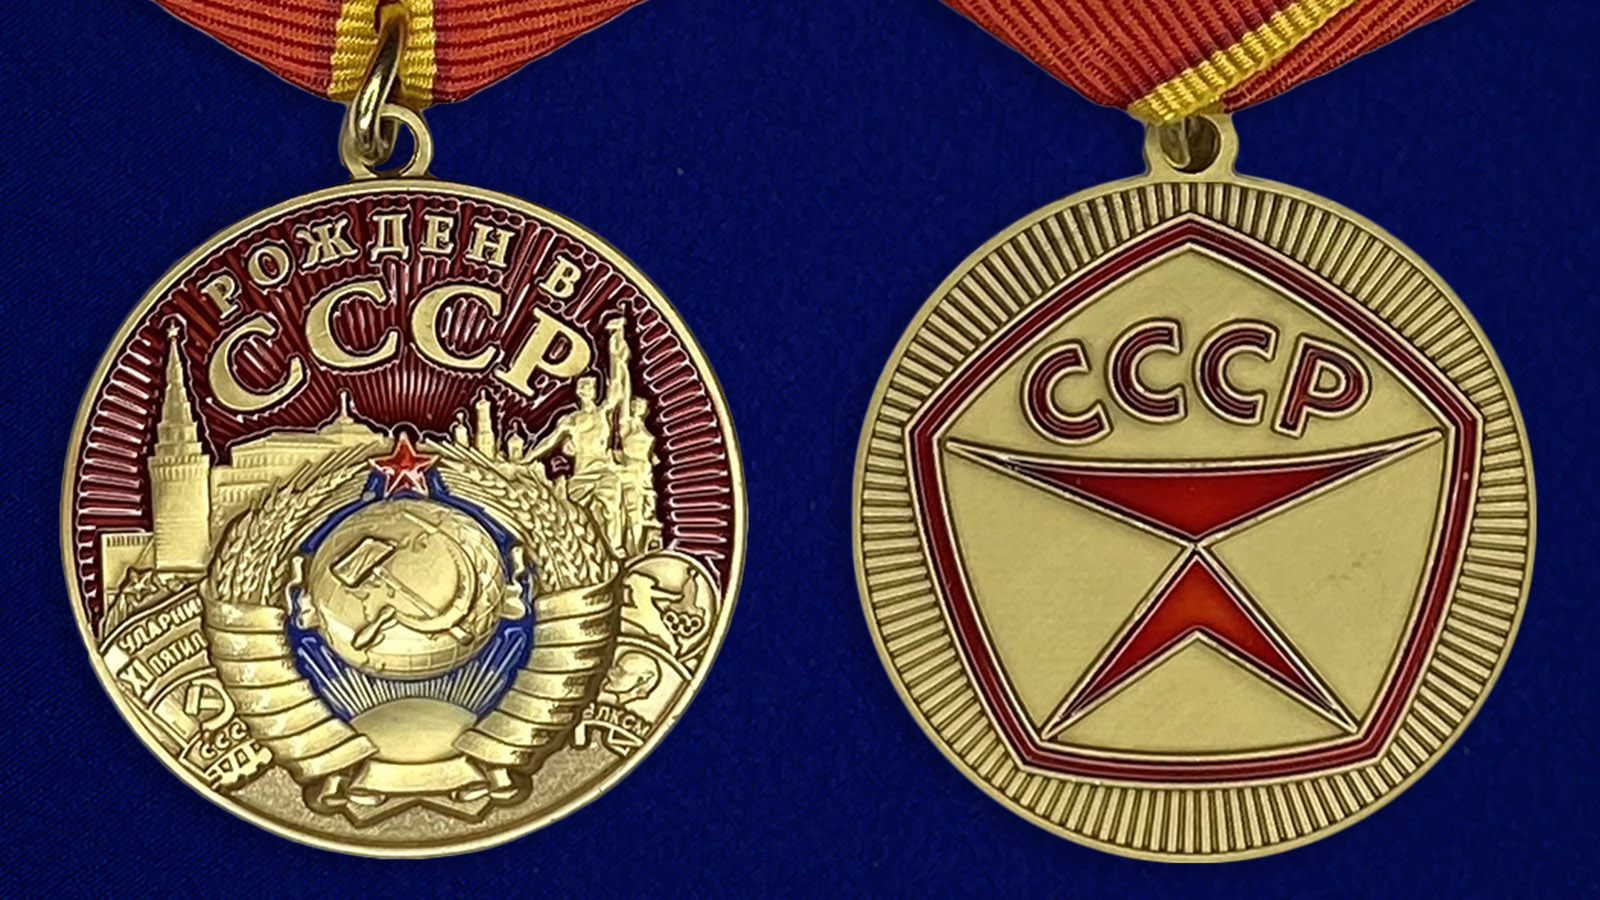 Описание медали "Рожден в СССР"